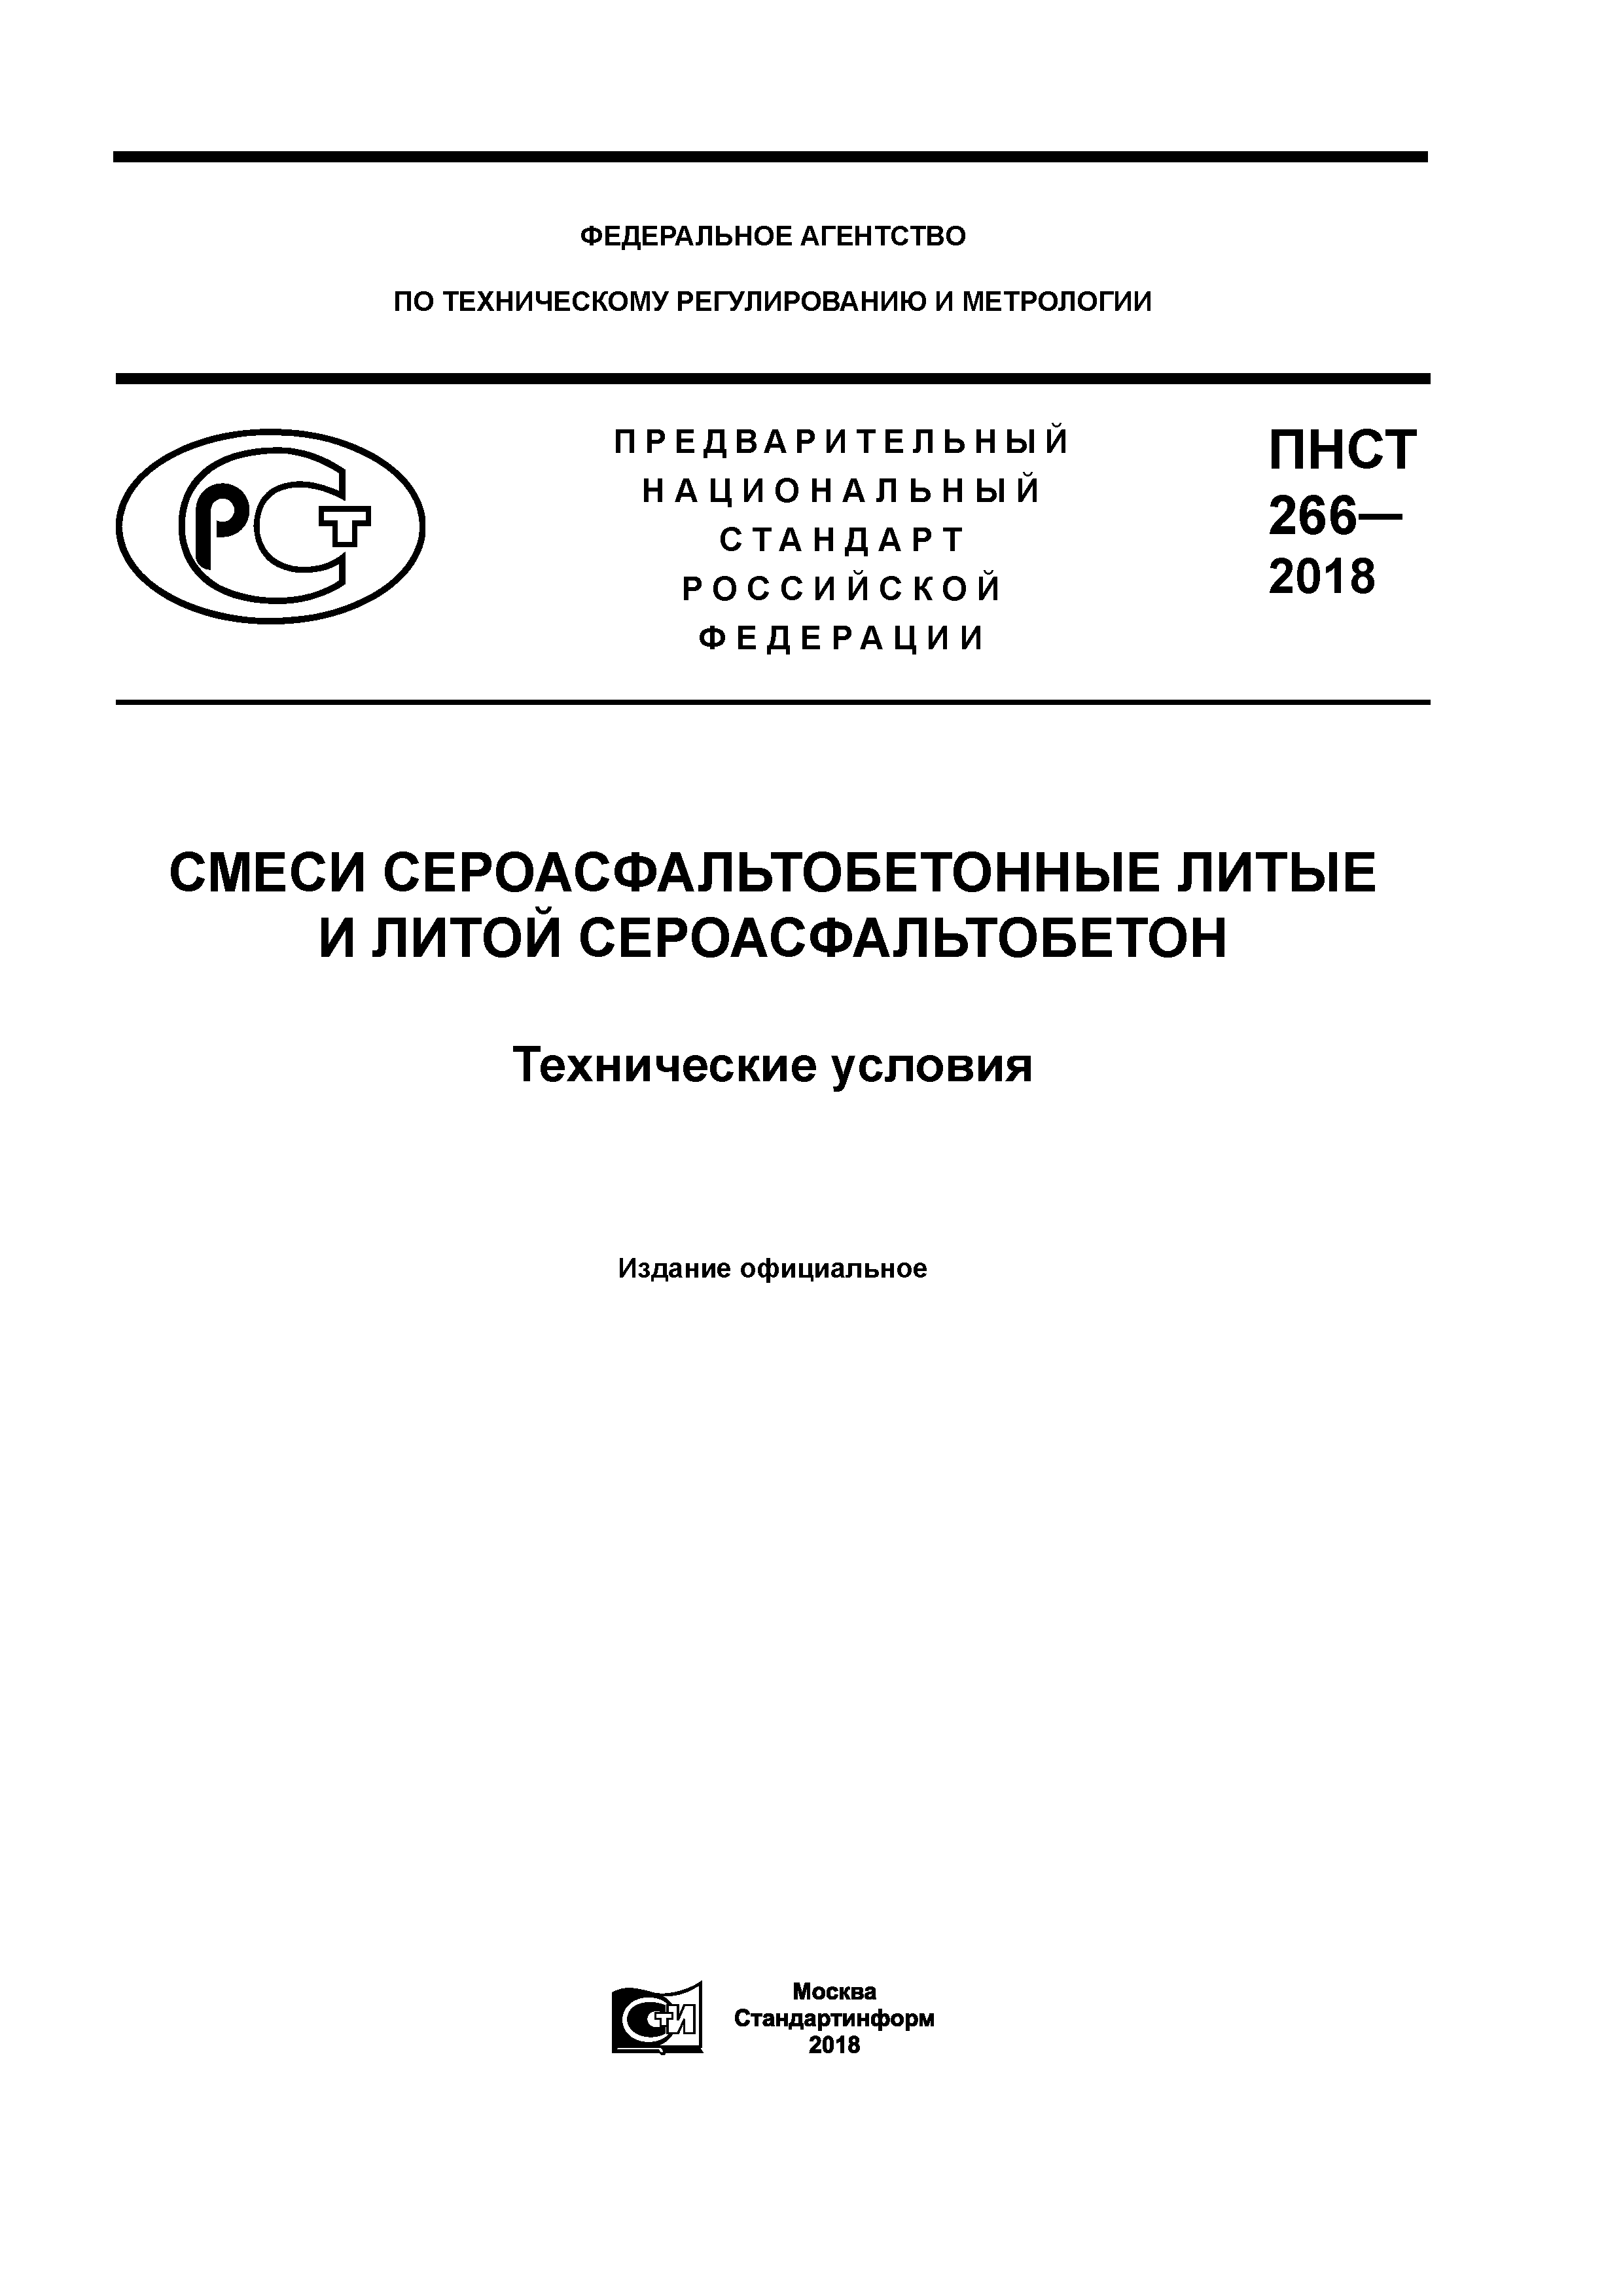 ПНСТ 266-2018